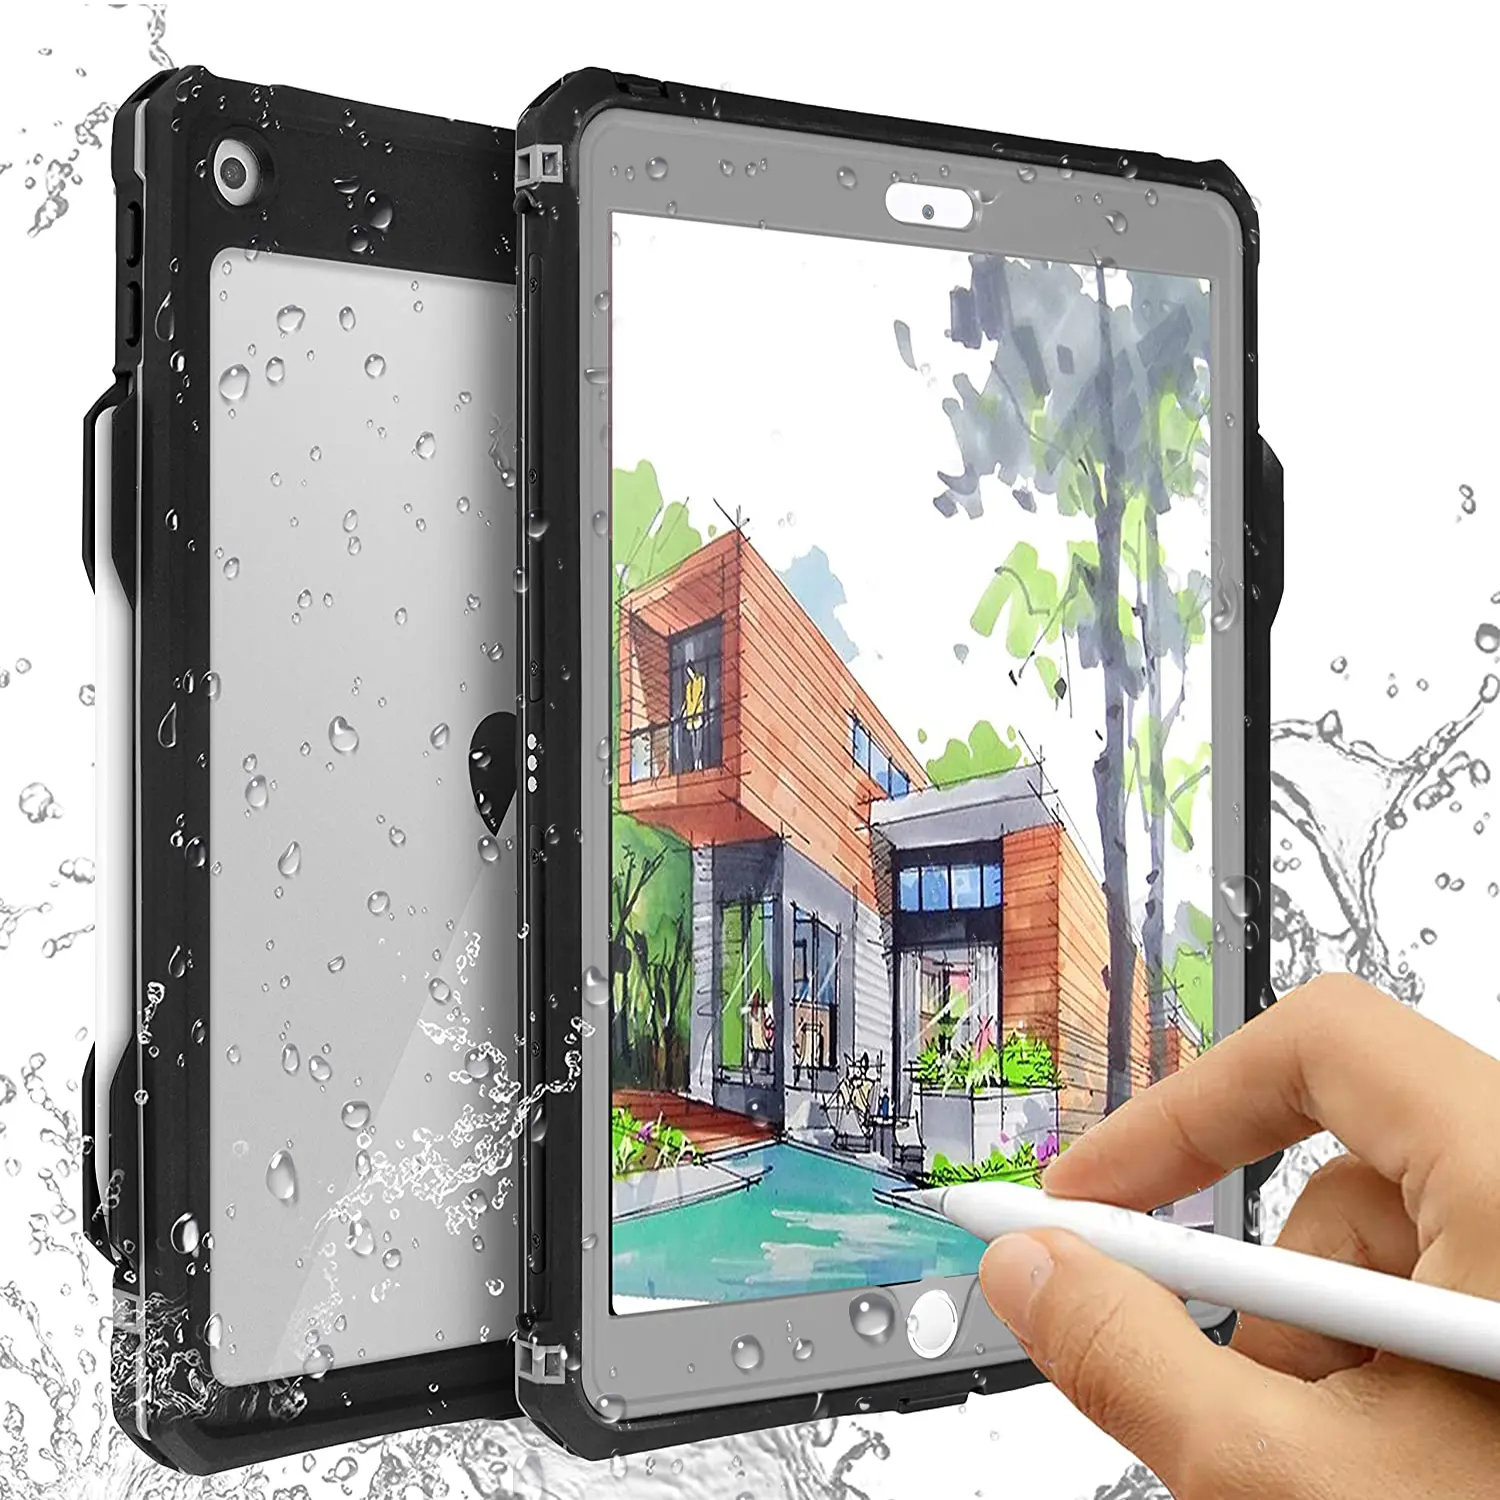 Tablet custodia protettiva impermeabile per ipad 7/8th 10.2 inth tablet caso della copertura con la Cinghia Del Basamento Matita holde pieno corpo iPad caso